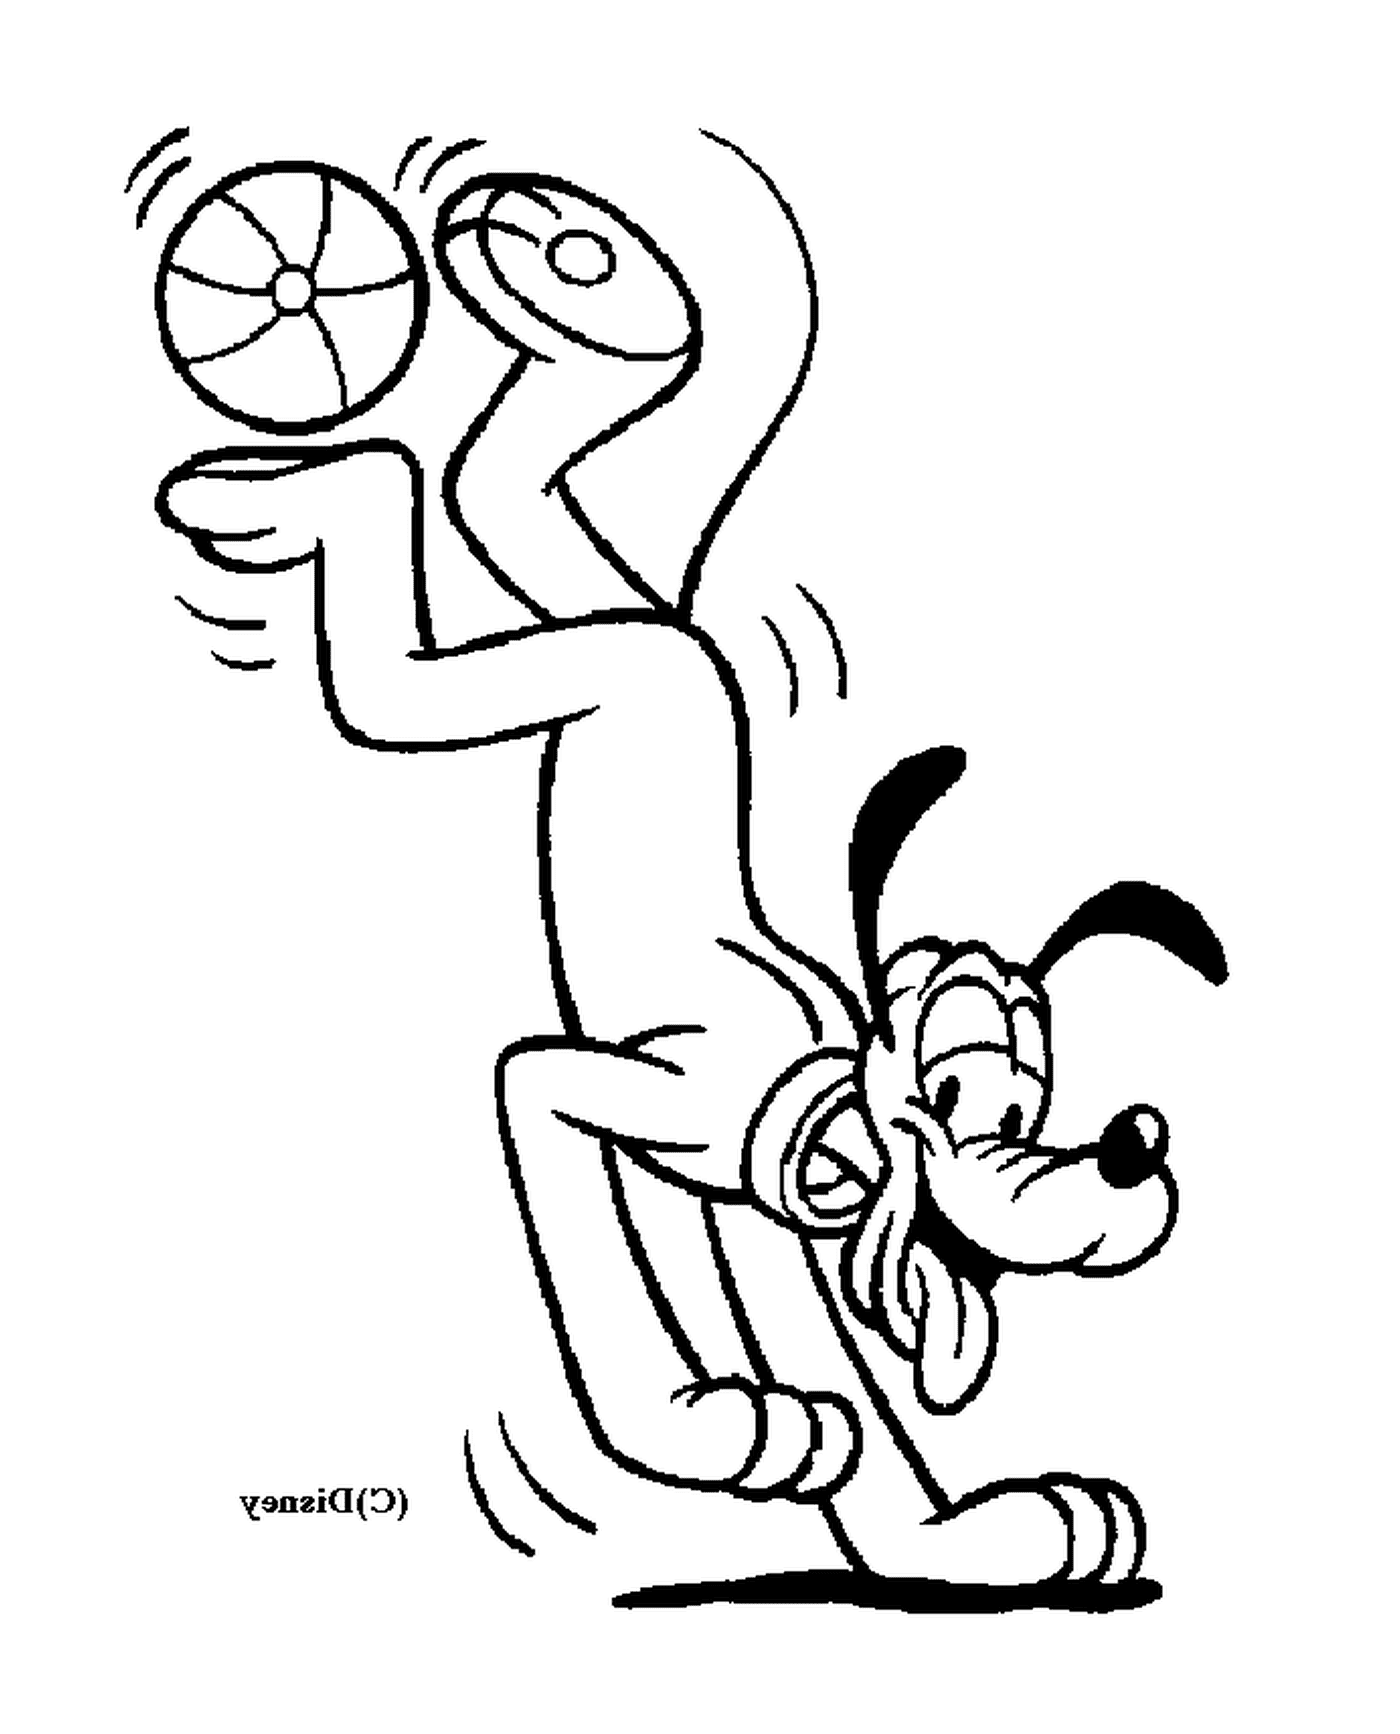  Perro jugando con un frisbee como ilustración 